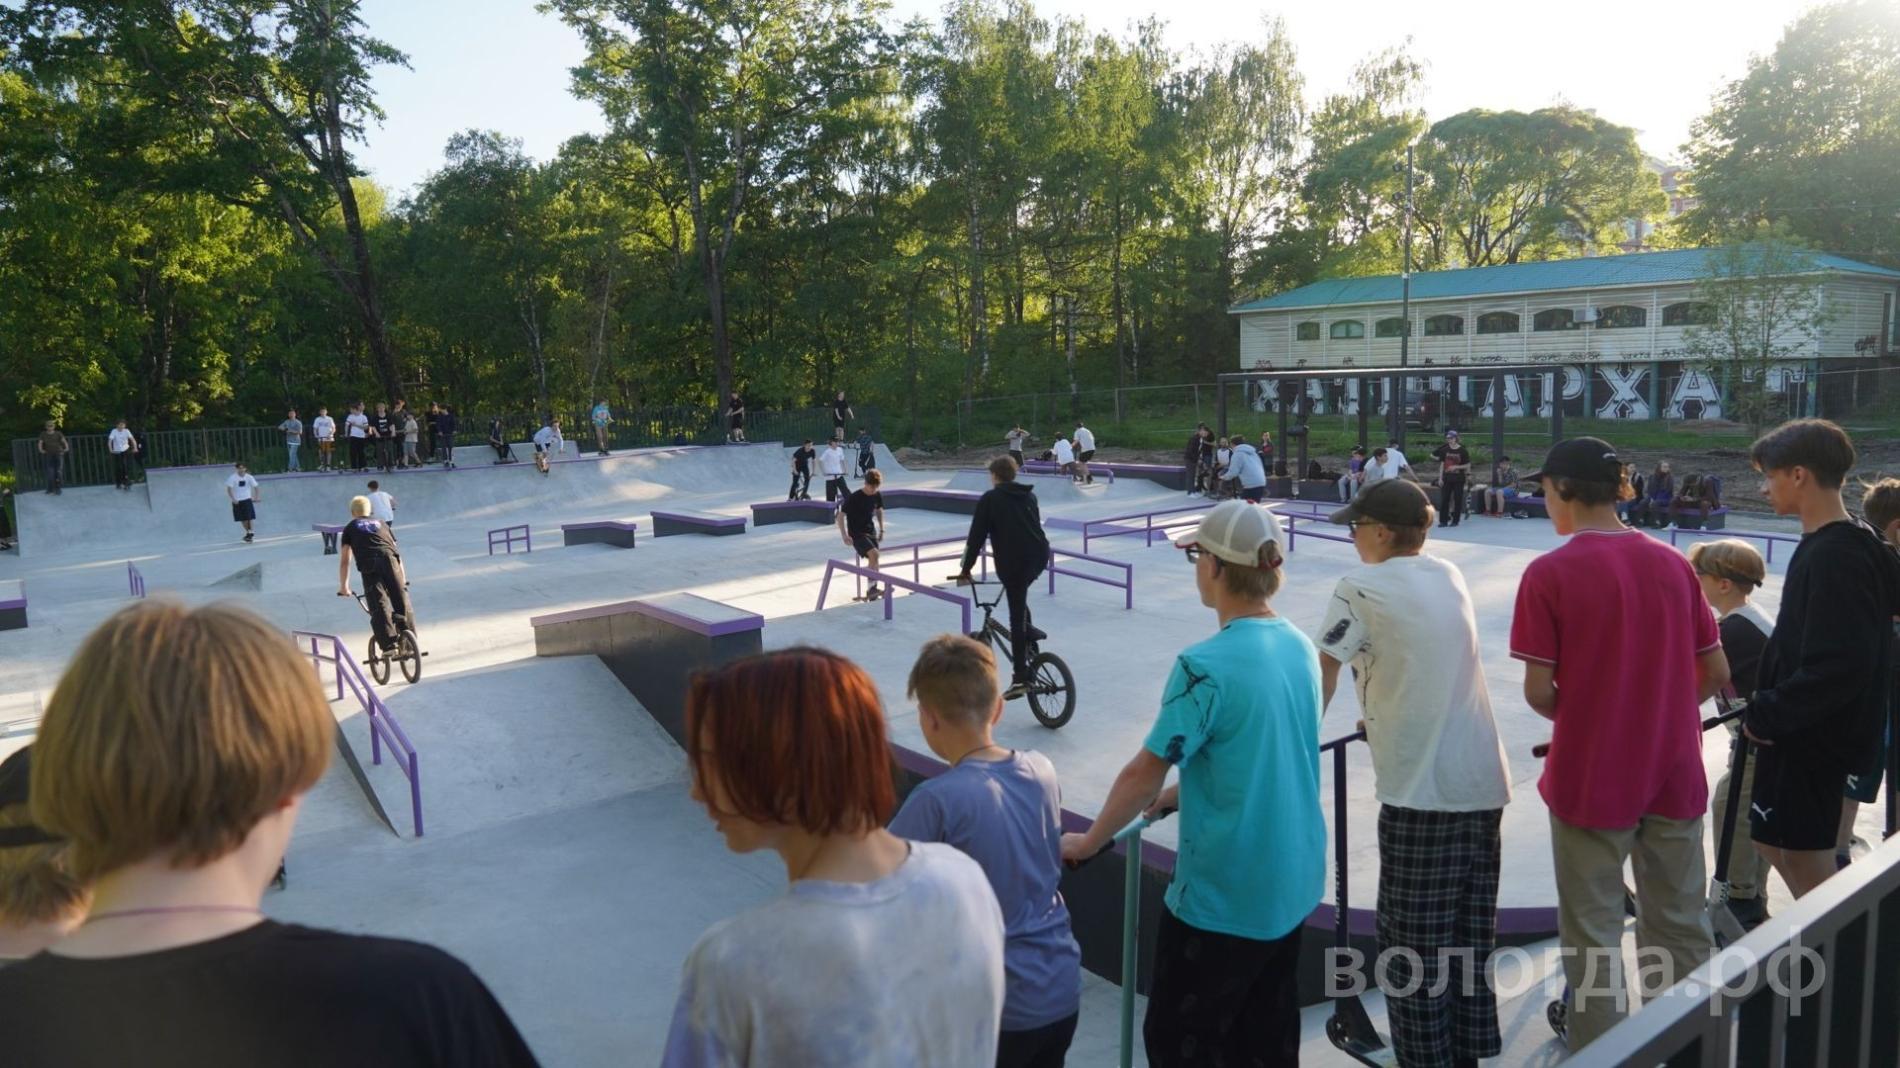 В Вологде состоится закрытие летнего сезона мероприятий скейт-парка «Яма» в рамках фестиваля «Яма Fest»